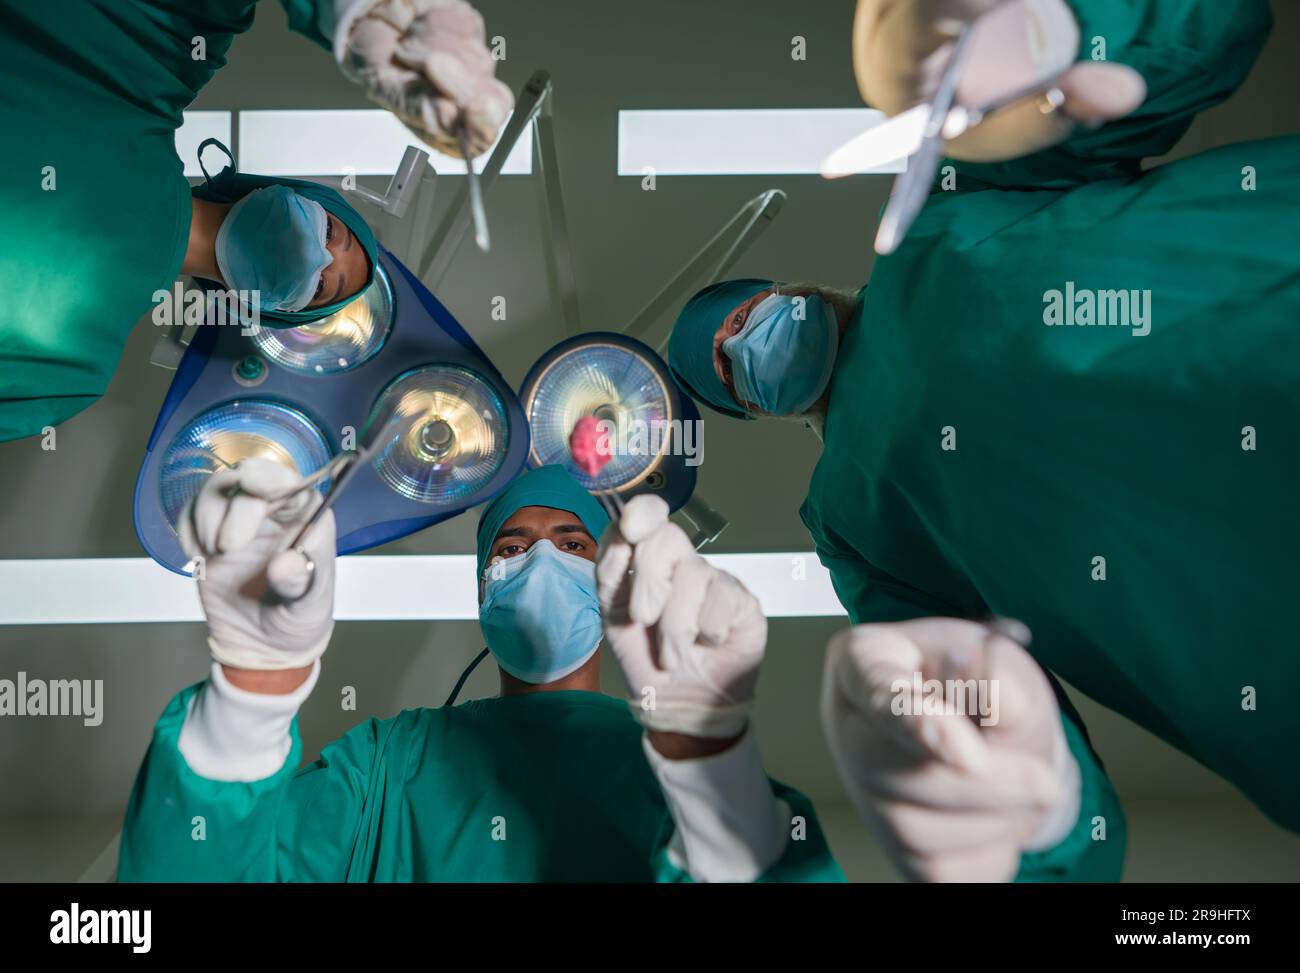 Concetto di assistenza chirurgica di emergenza. Gruppo di chirurghi e infermieri in uniforme da camice verde chirurgica che esegue operazioni chirurgiche in sala operatoria. vi inferiore Foto Stock